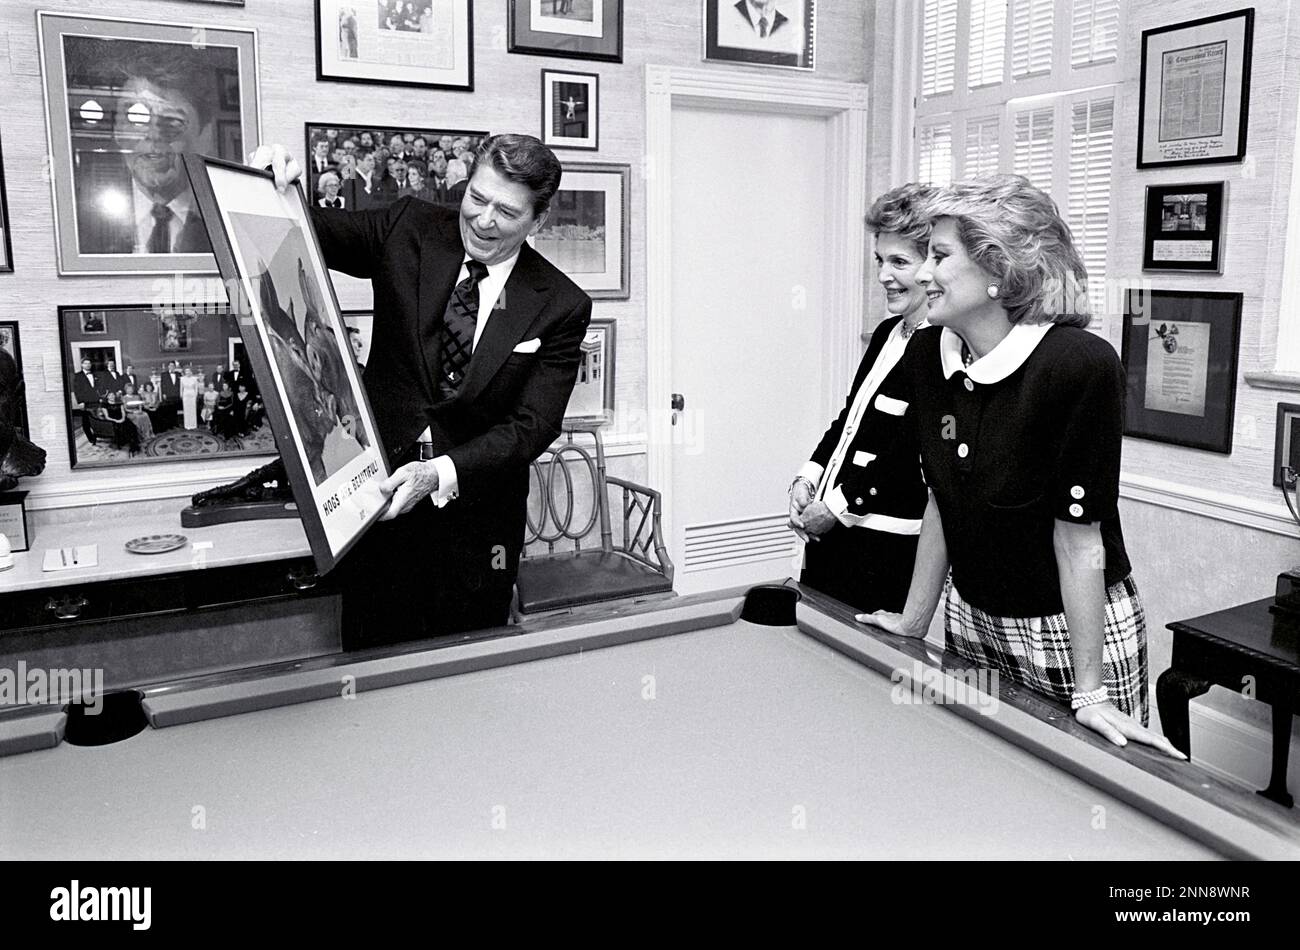 Präsident Ronald Reagan und Nancy Reagan im Billardzimmer der Residenz des Weißen Hauses während eines Interviews mit der Fernsehjournalistin Barbara Walters, Washington, DC, 2/25/1986. (Foto: Pressestelle des Weißen Hauses Stockfoto